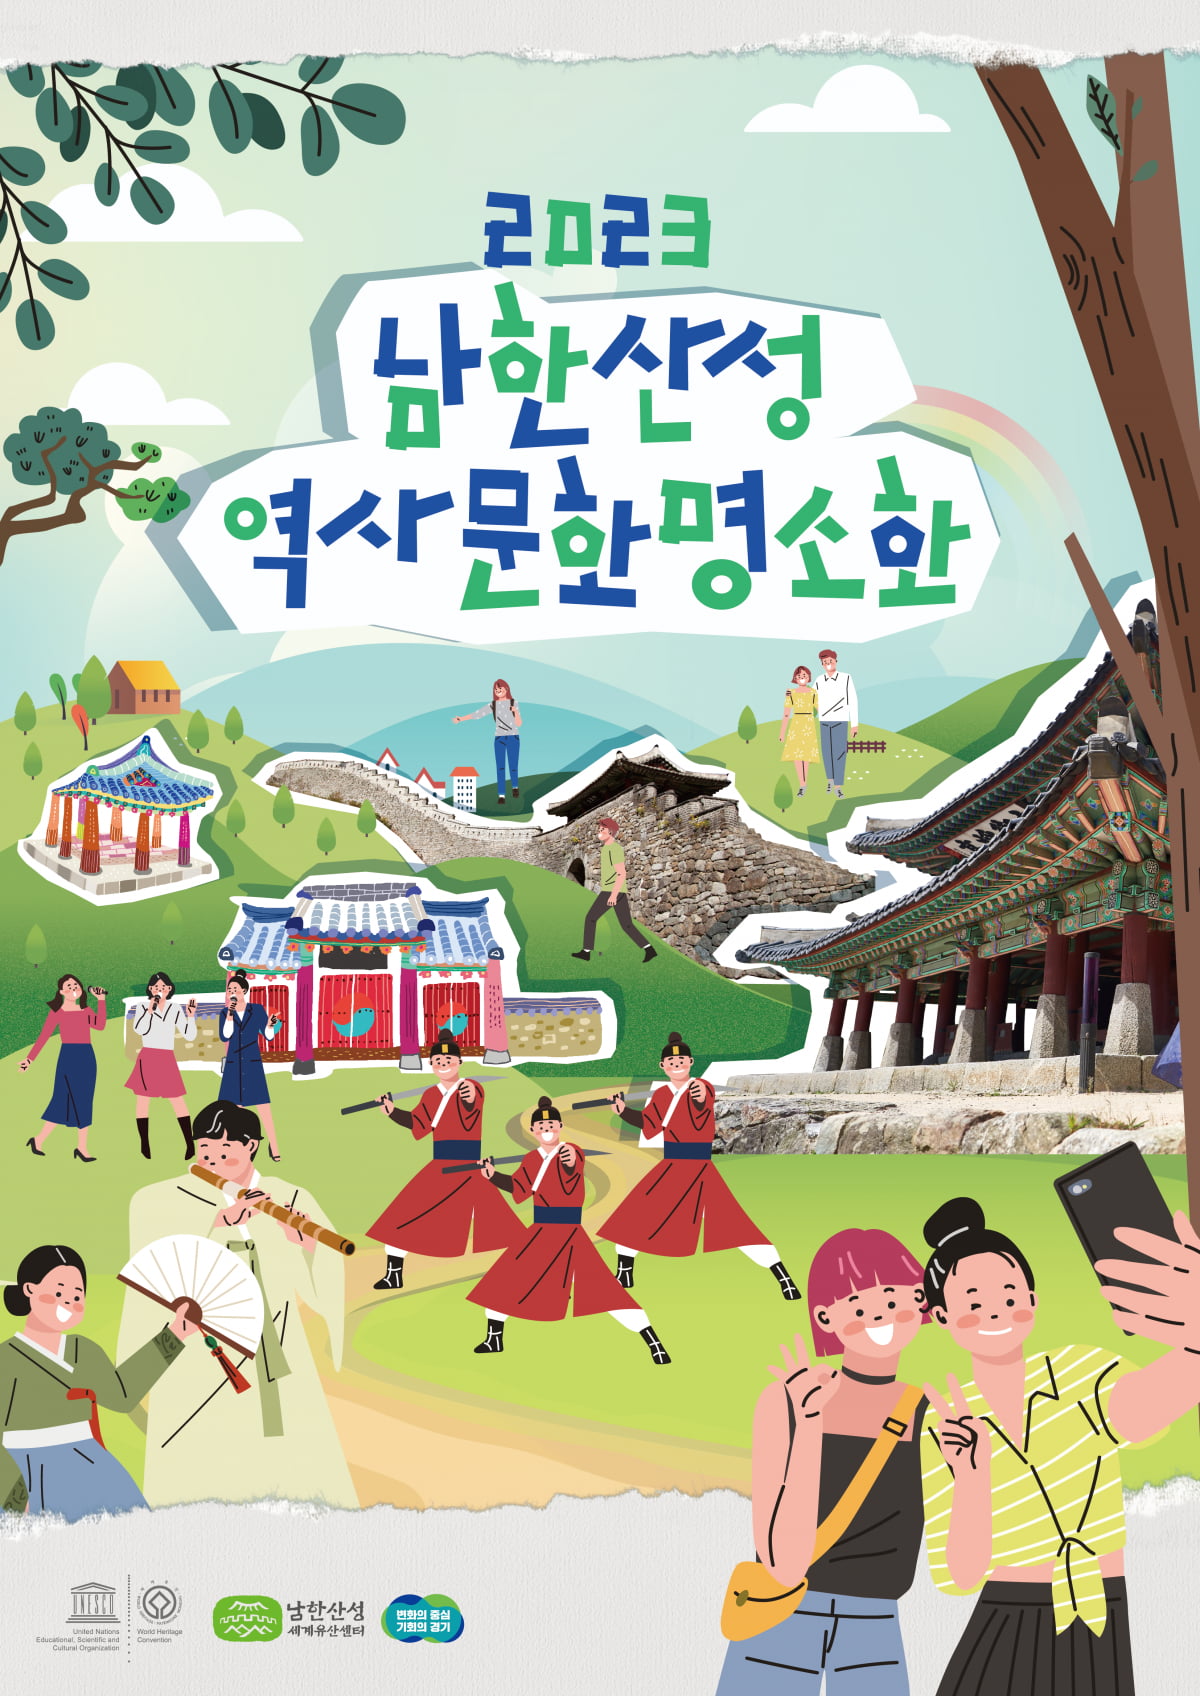 경기도, 오는 9월 2일부터 '2023년 세계유산 남한산성 역사 문화 명소화' 프로그램 진행